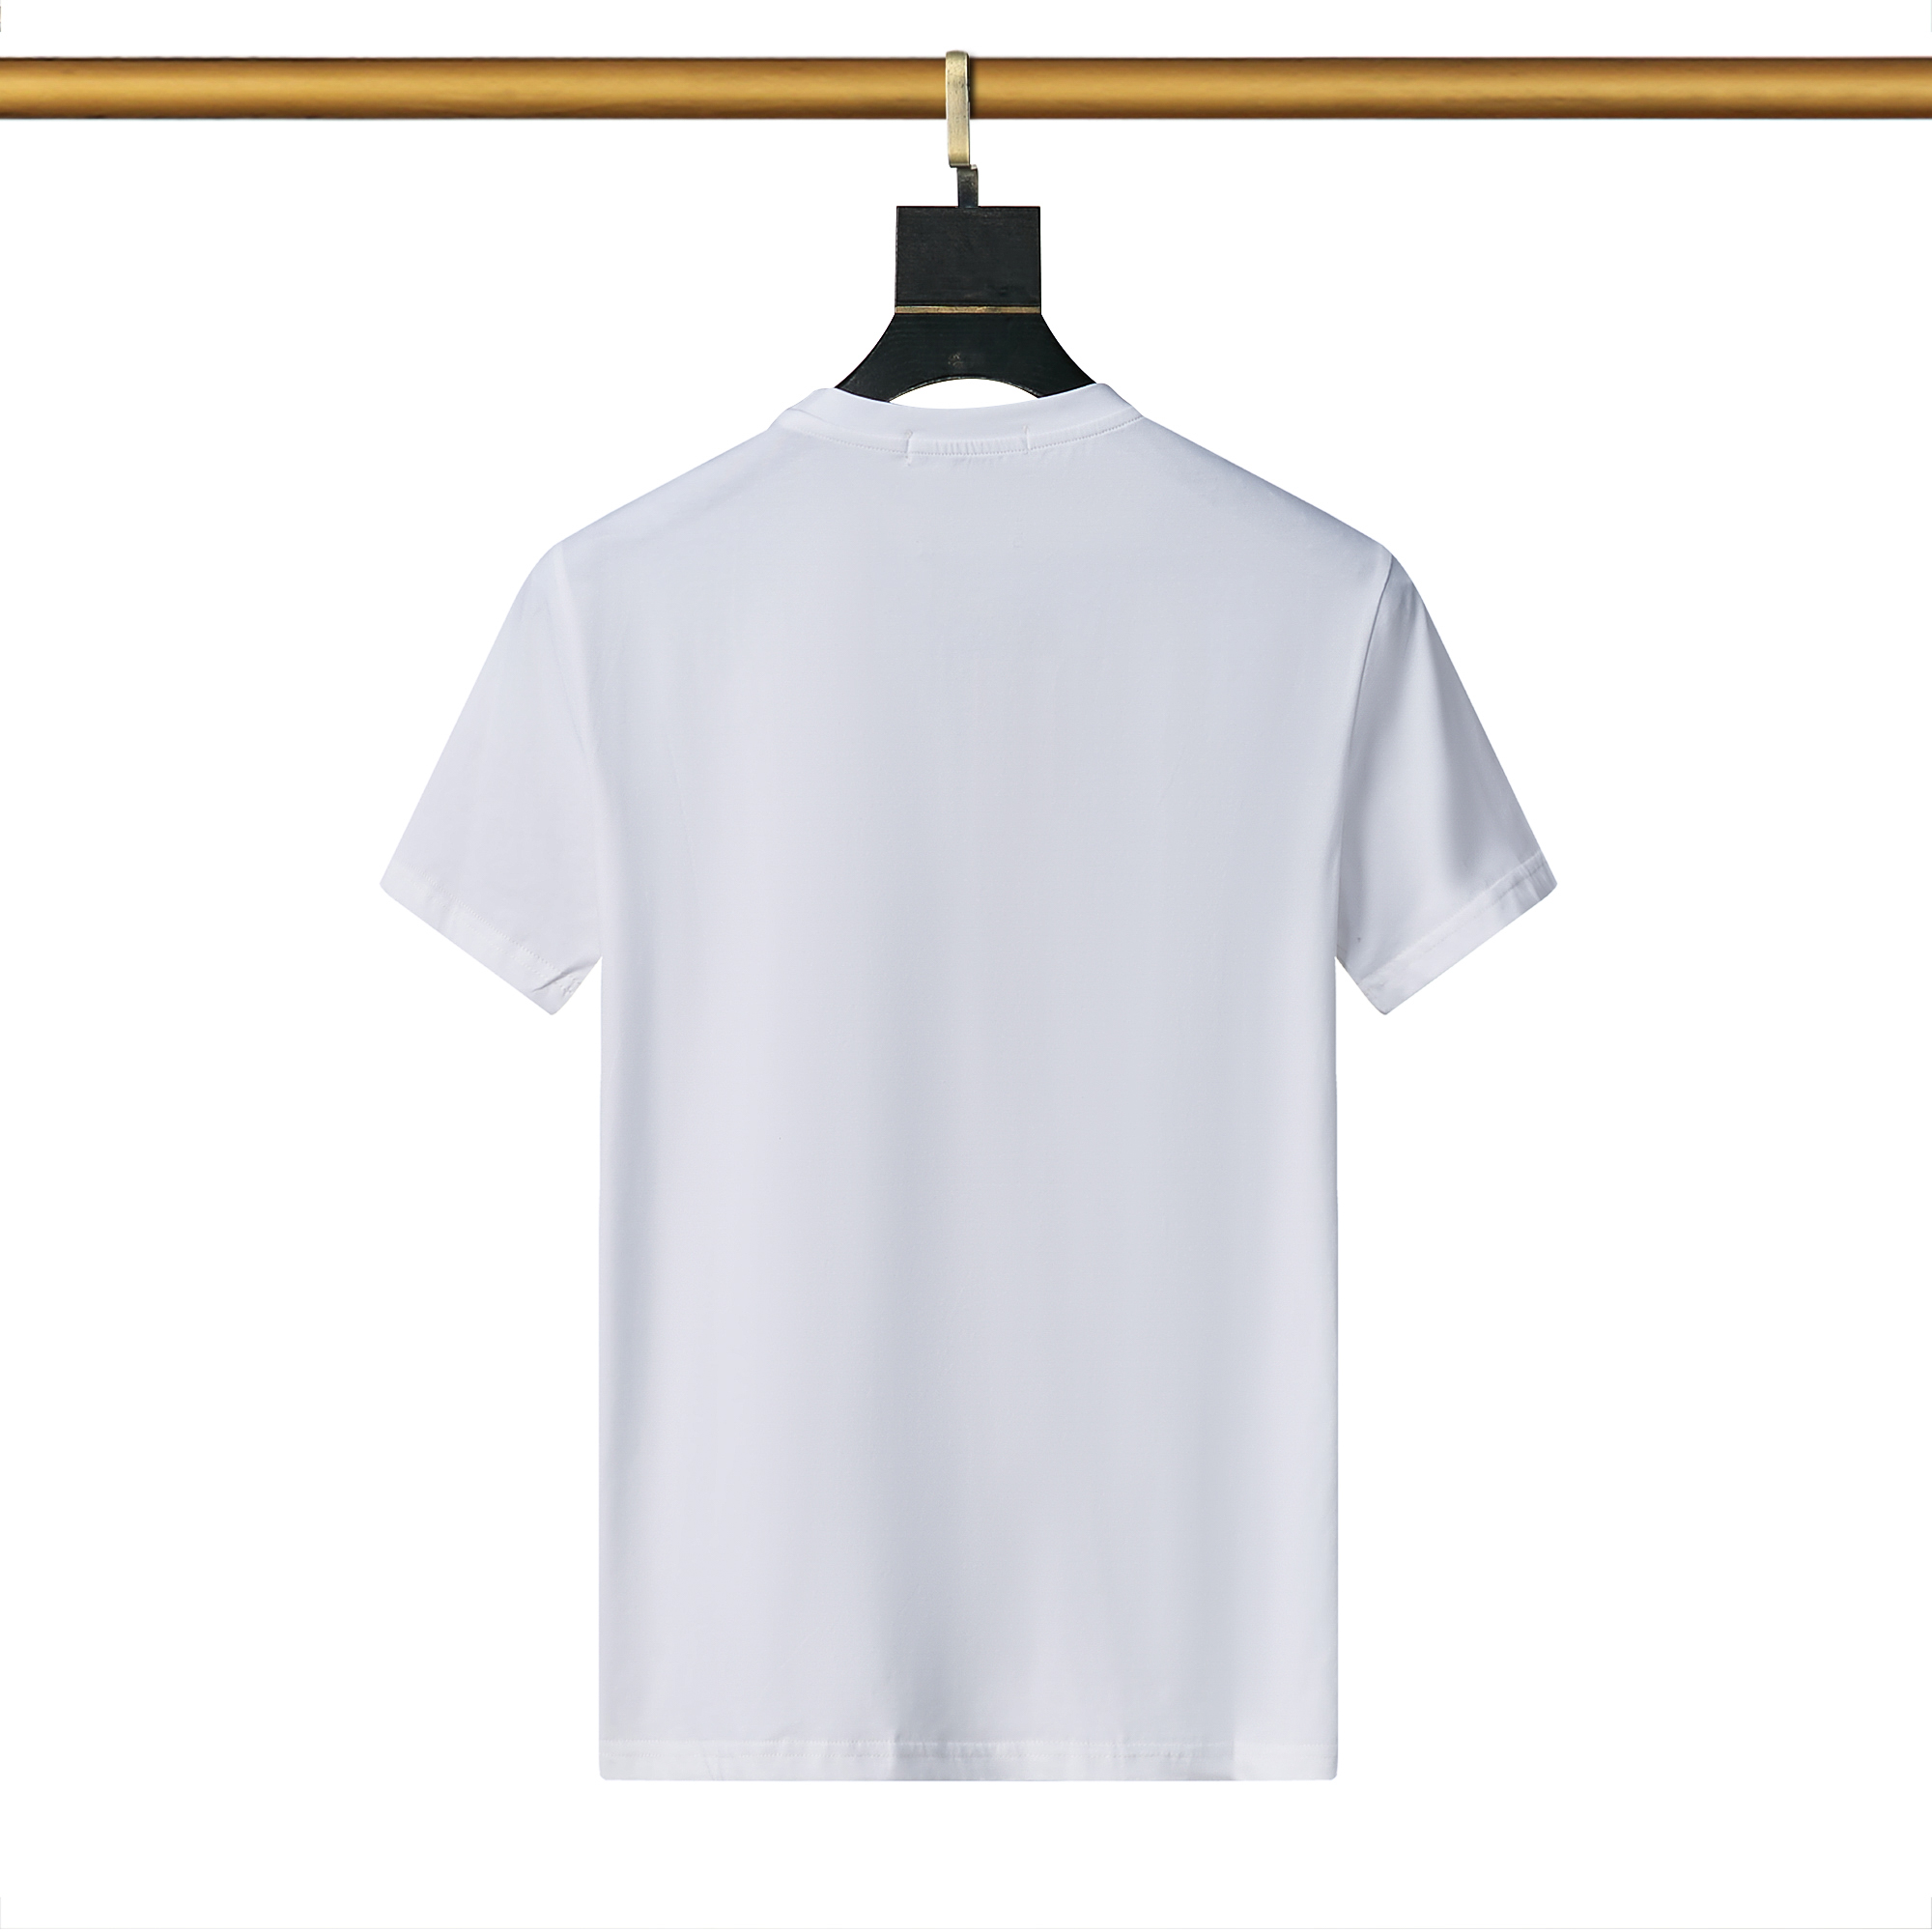 D&G Crew Neck Short Sleeve T Shirts For Men # 265978, cheap Dolce&Gabbana Men's Short sleeve, only $25!